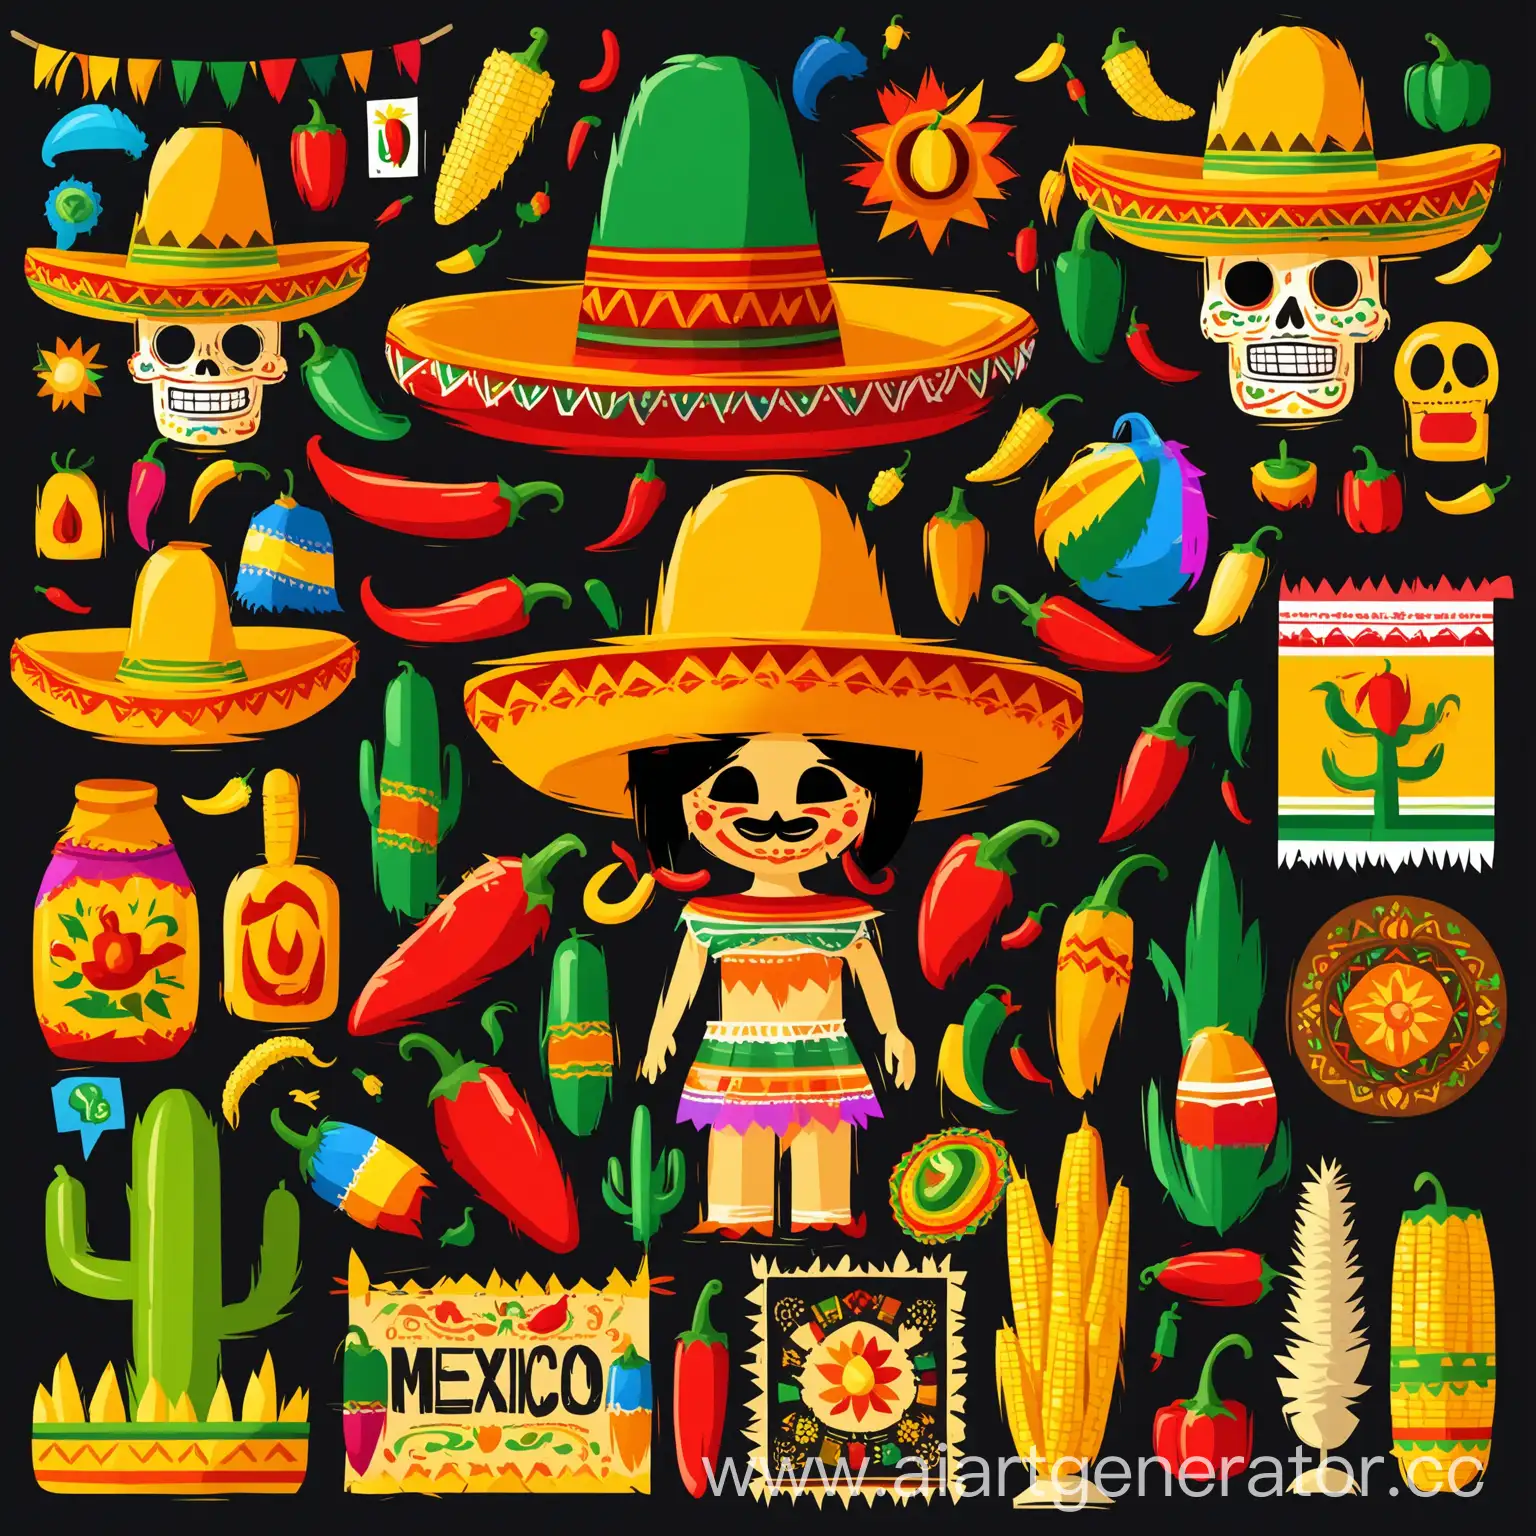 иконки, инфографика, мексиканский стиль, иконки в мексиканском стиле, иконки с мексикой, мексиканская шляпа, пиньята, перец халапеньо, кукуруза, перец чили, элементы мексиканской культуры